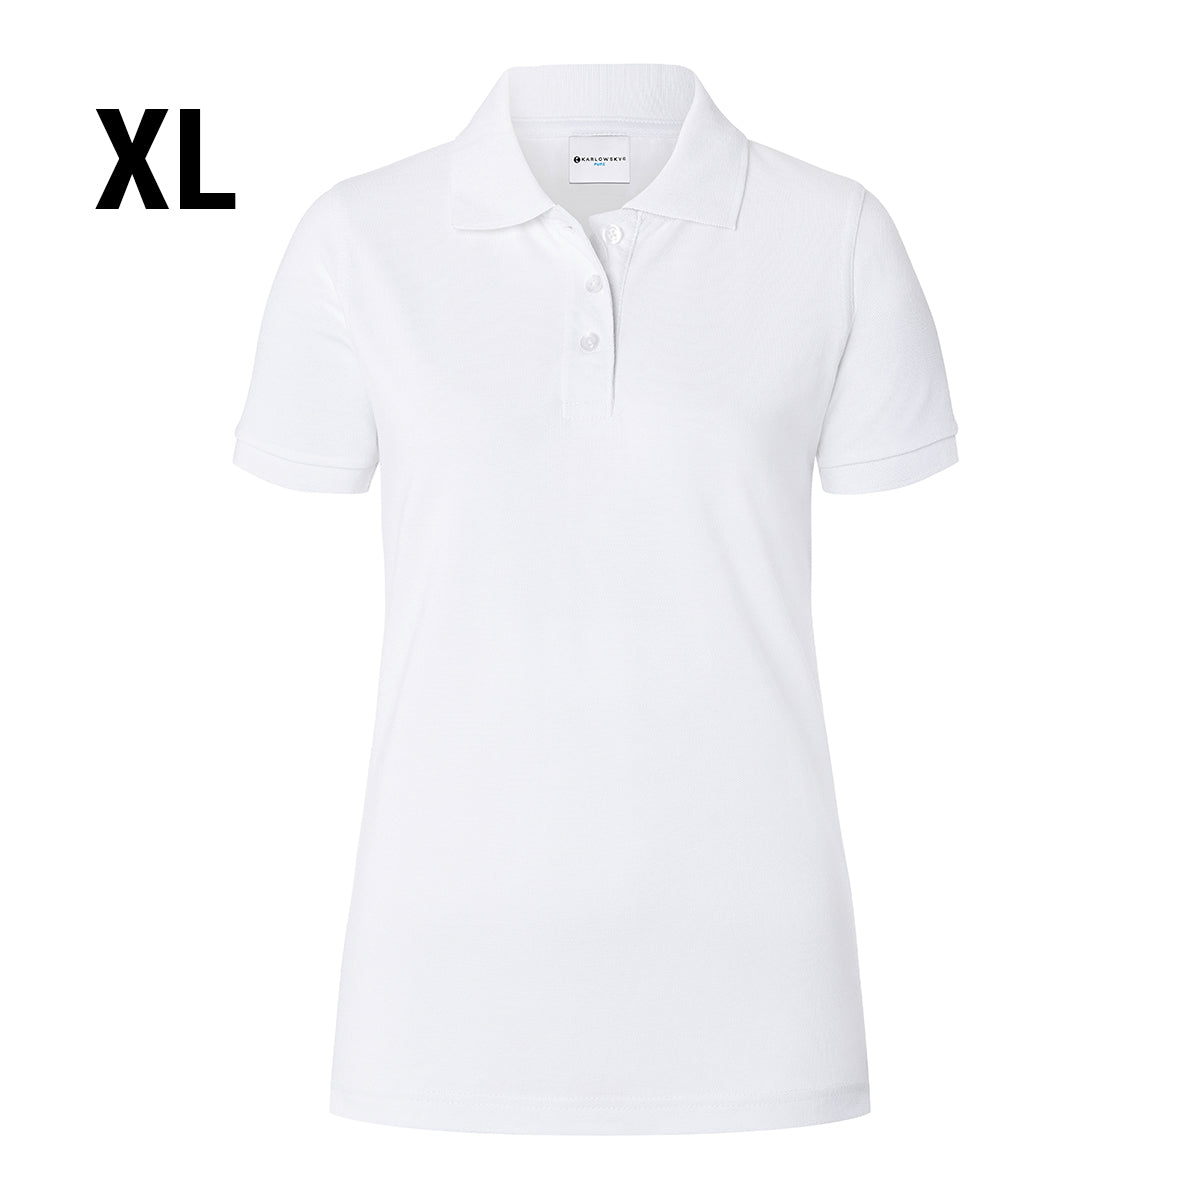 Karlowsky - Arbejdsbeklædning Basic Poloshirt til damer - Hvid - Størrelse: XL